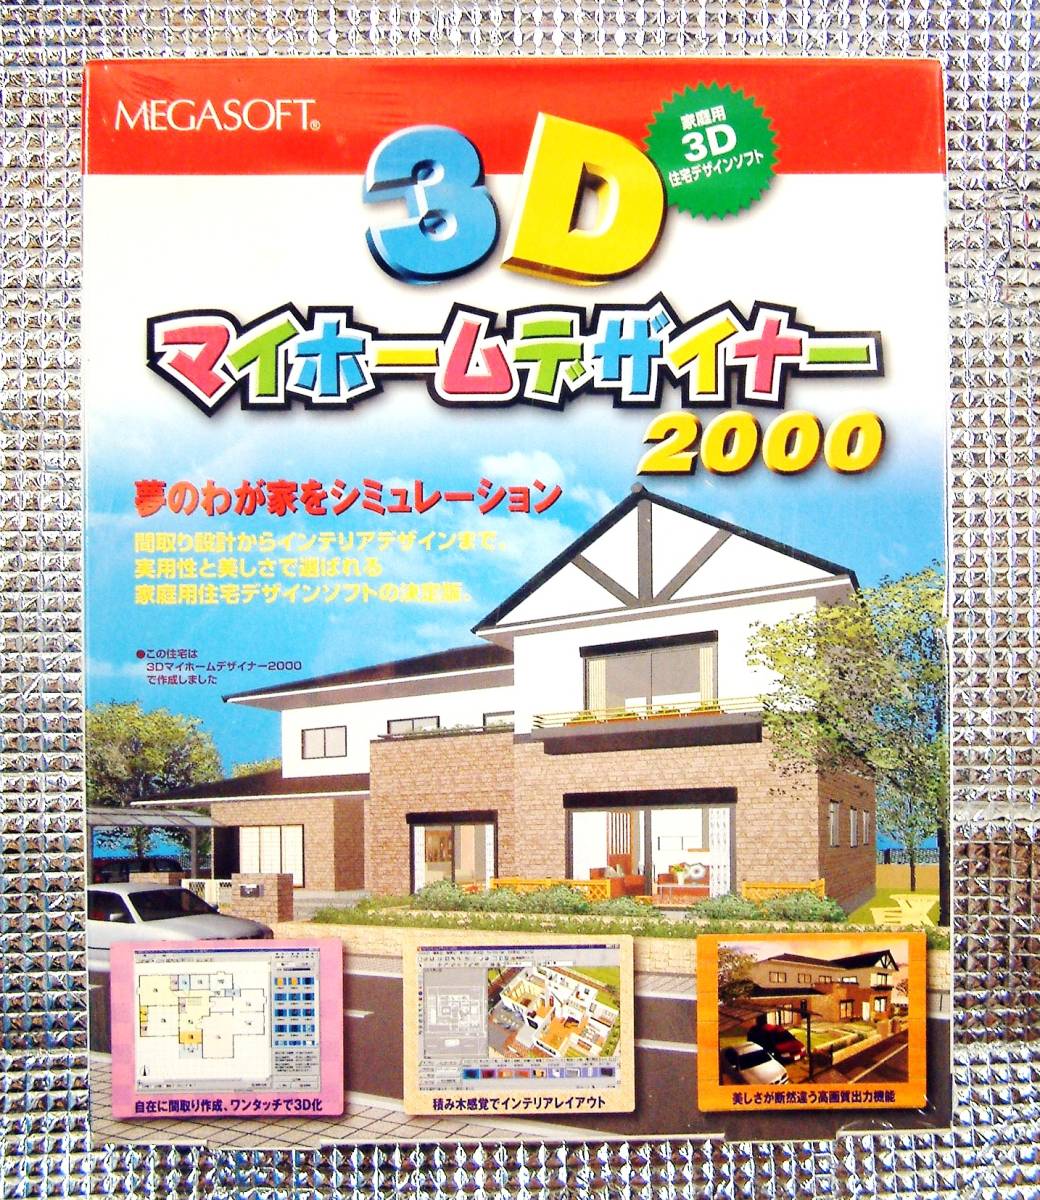 【771B】 MEGASOFT 3Dマイホームデザイナー 2000 未開封品 メガソフト 新築 リフォーム マイホーム 住宅 シミュレーション ソフト 住居 その他